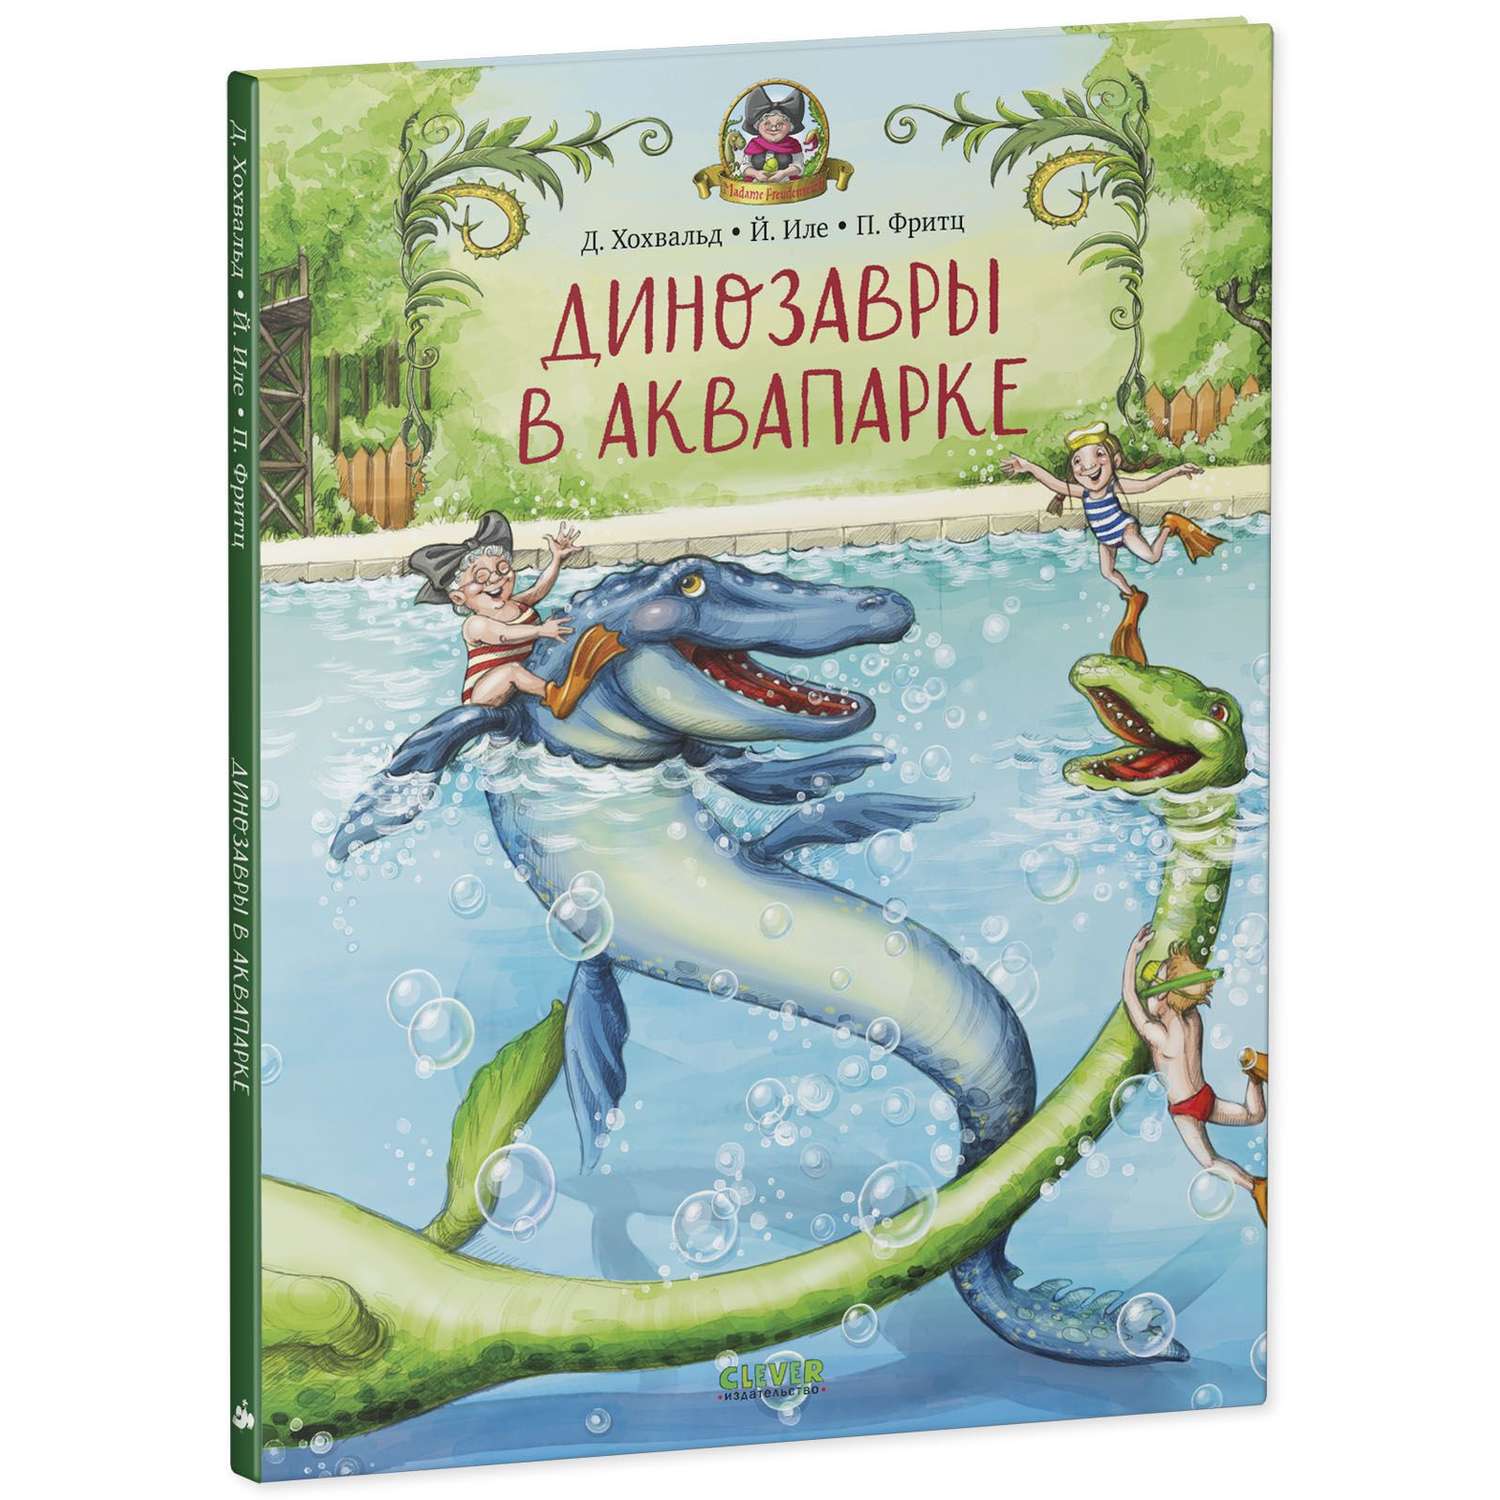 Книга Clever Издательство Динозавры в аквапарке - фото 2